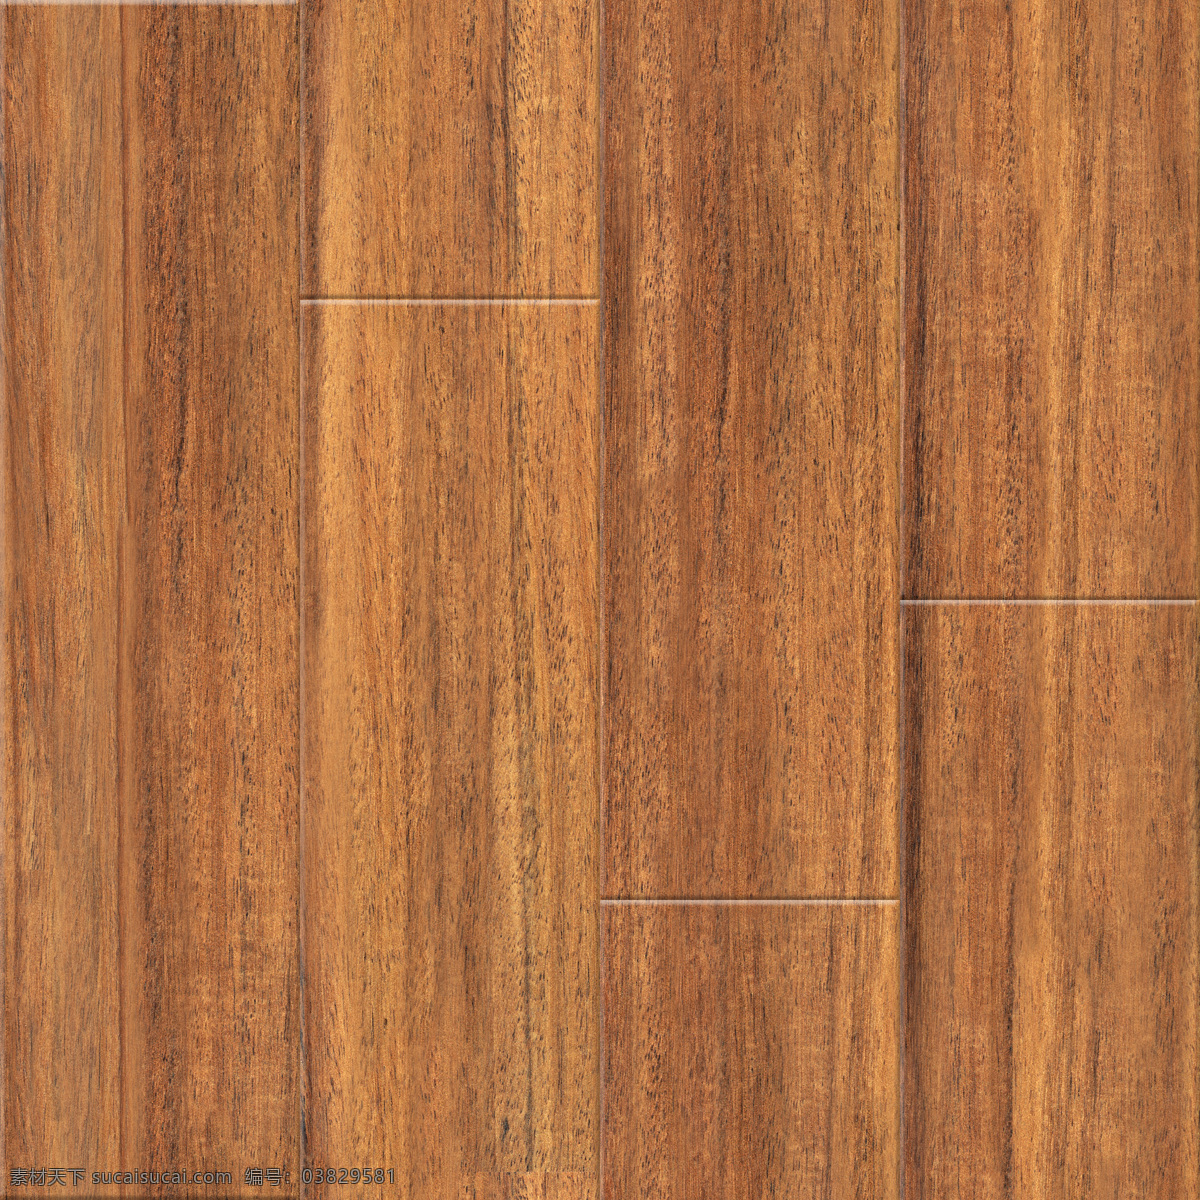 地板贴图 木板 地板 木板贴图 木板3d贴图 地板3d贴图 地板贴纸 木板贴纸 拼合木板 拼花地板 仿古地板 复合地板 实木地板 木质 质感 底图 木地板